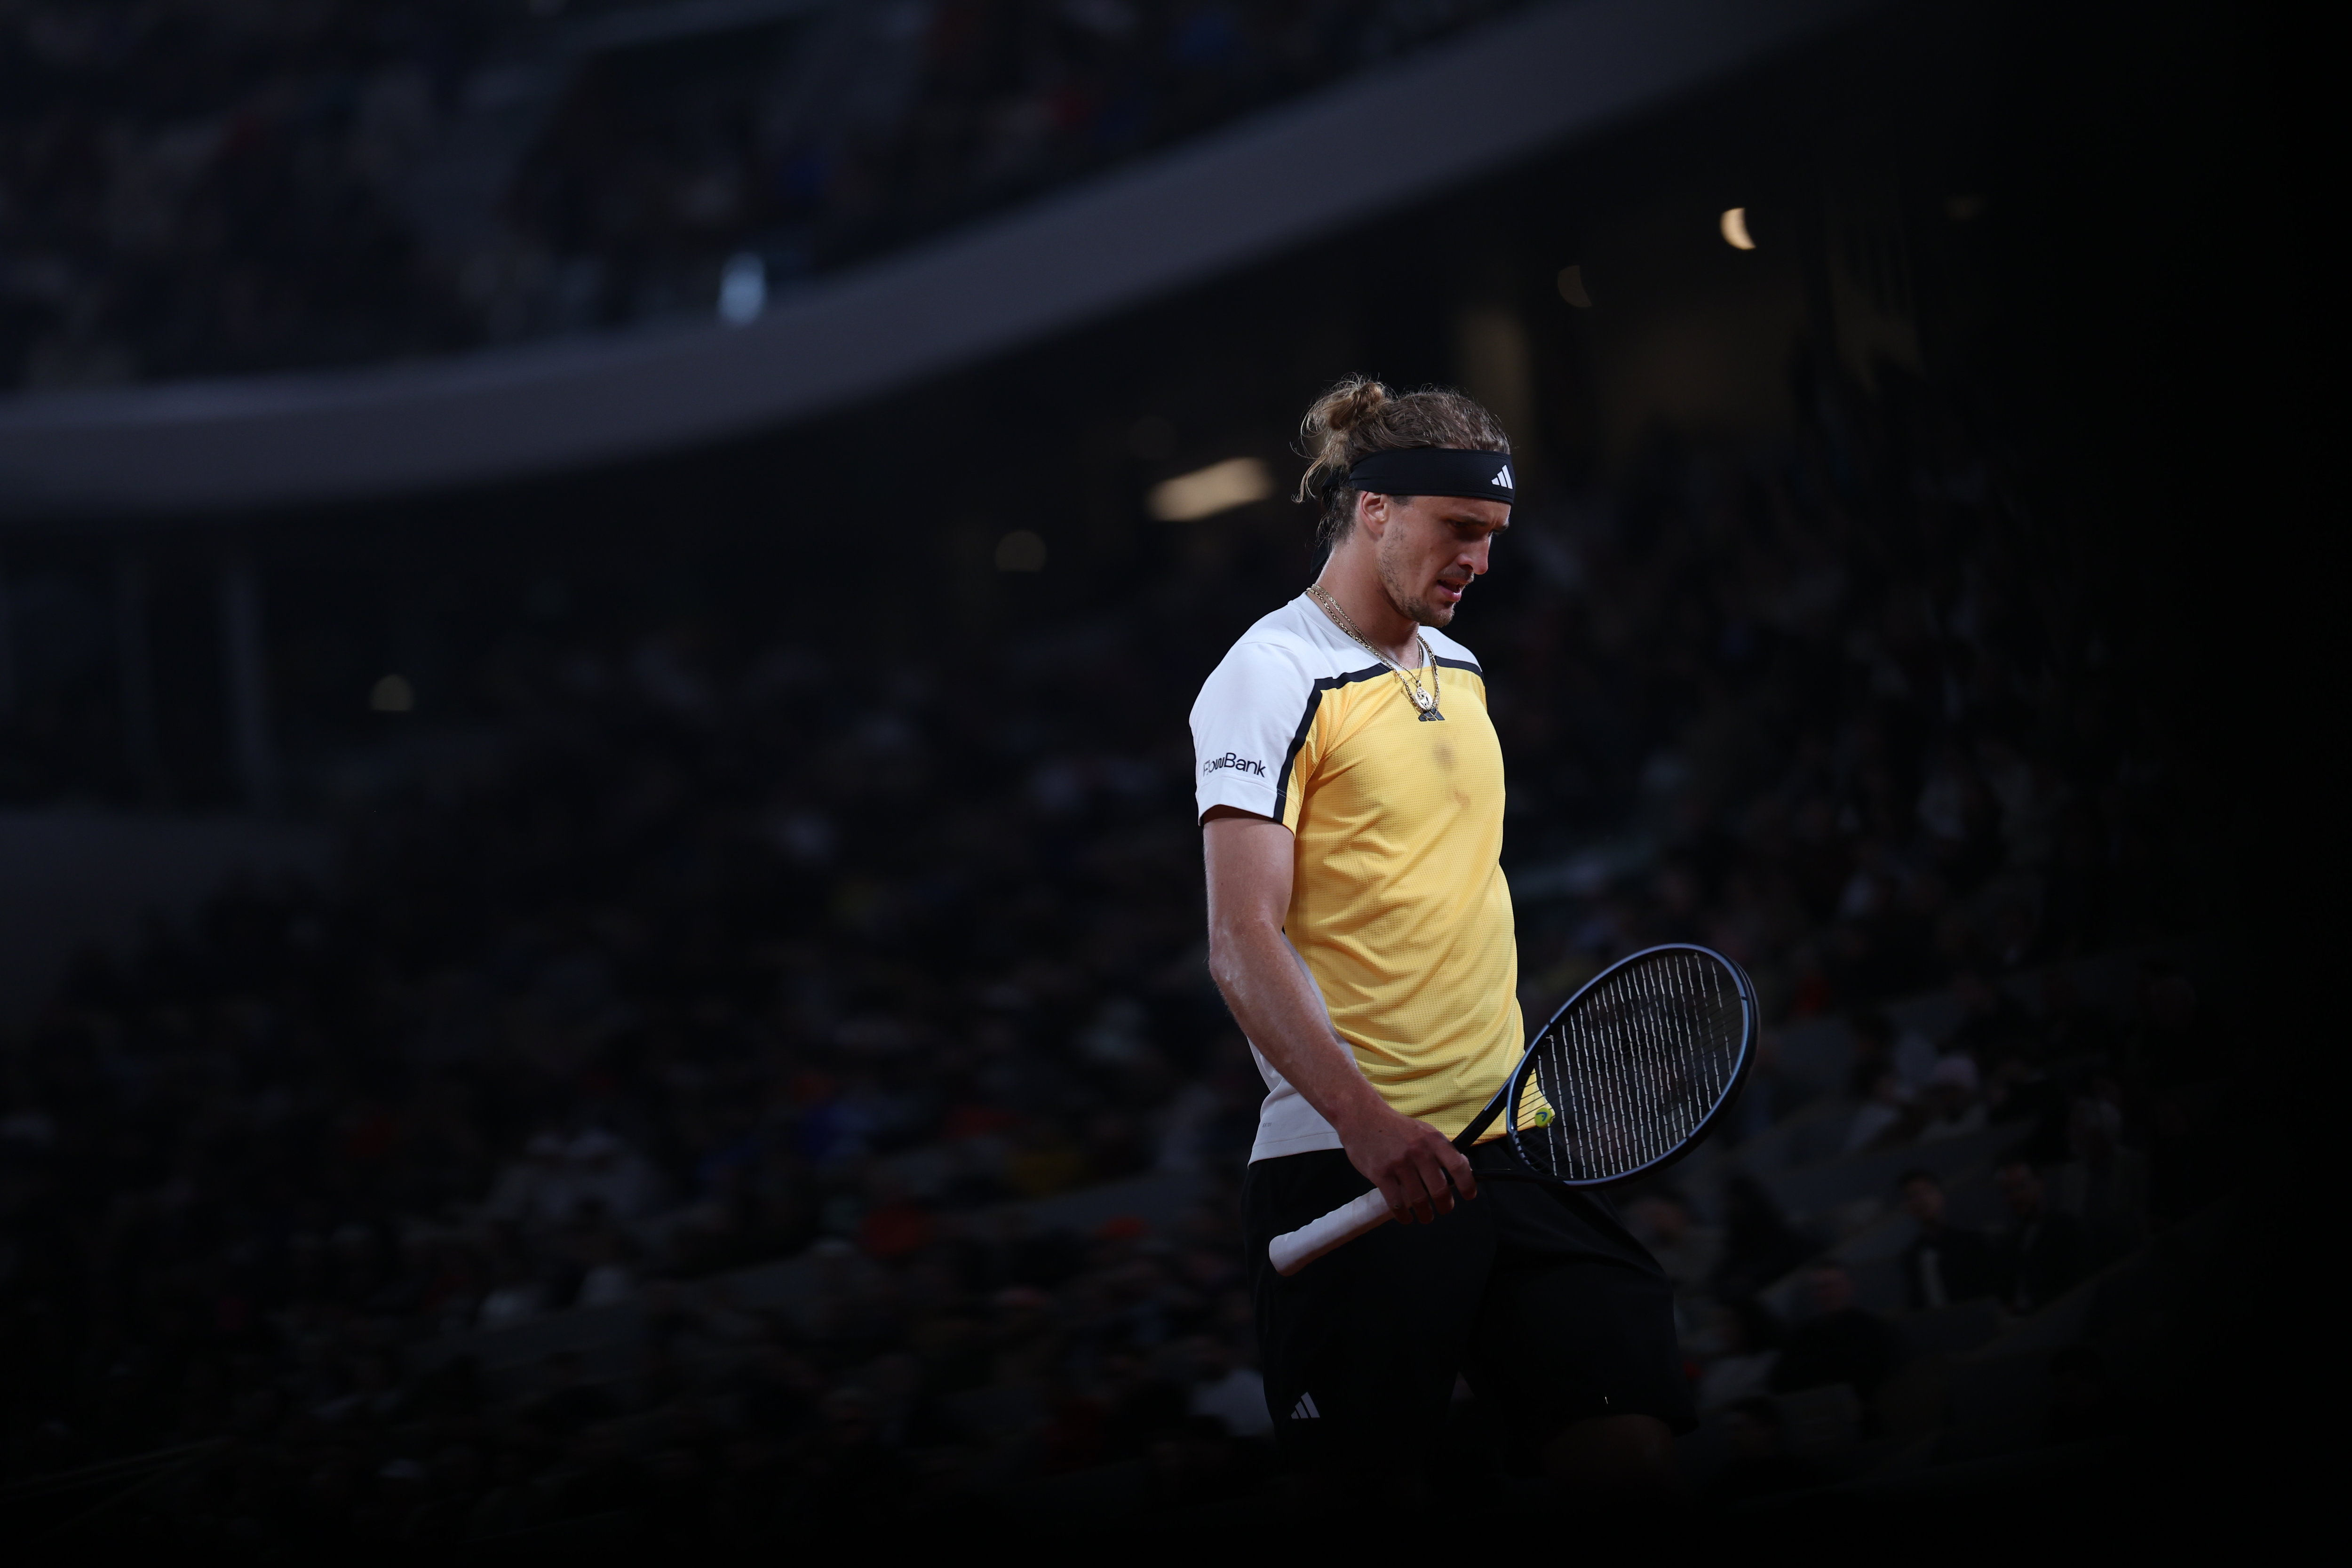 Alexander Zverev, qui a notamment sorti Nadal au premier tour, est parvenu en finale malgré le contexte de son procès pour violences conjugales. LP/Arnaud Journois